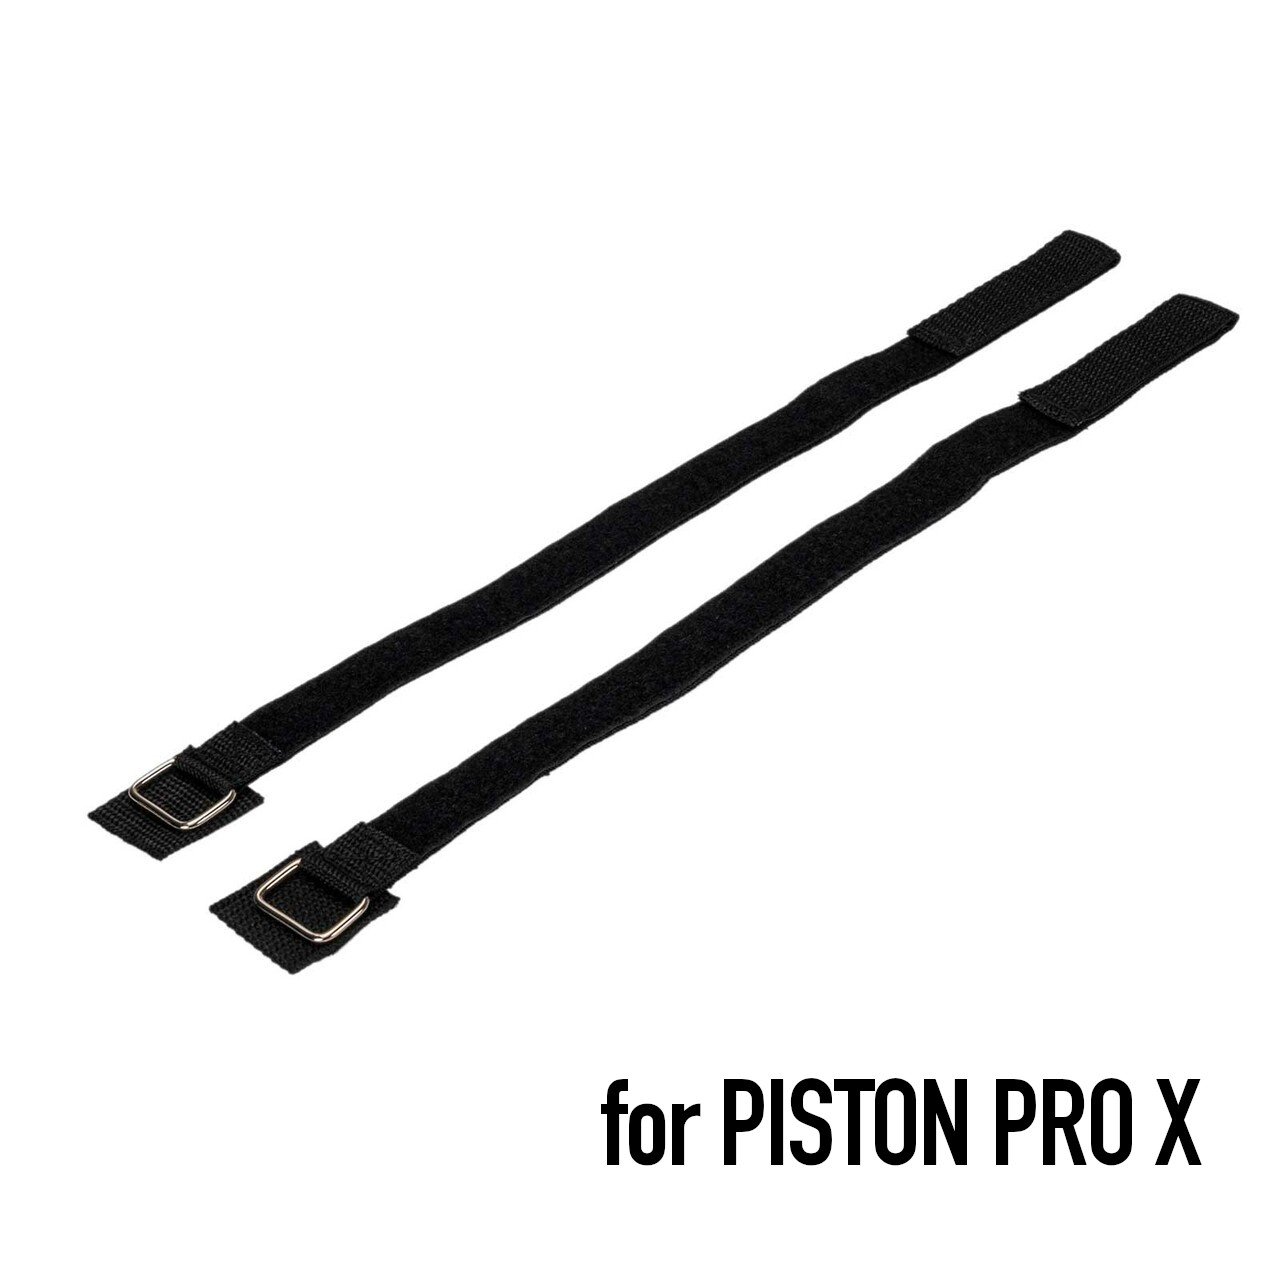 PISTON PRO X用パーツ フェンダーストラップキット  | Kuat正規輸入総代理店